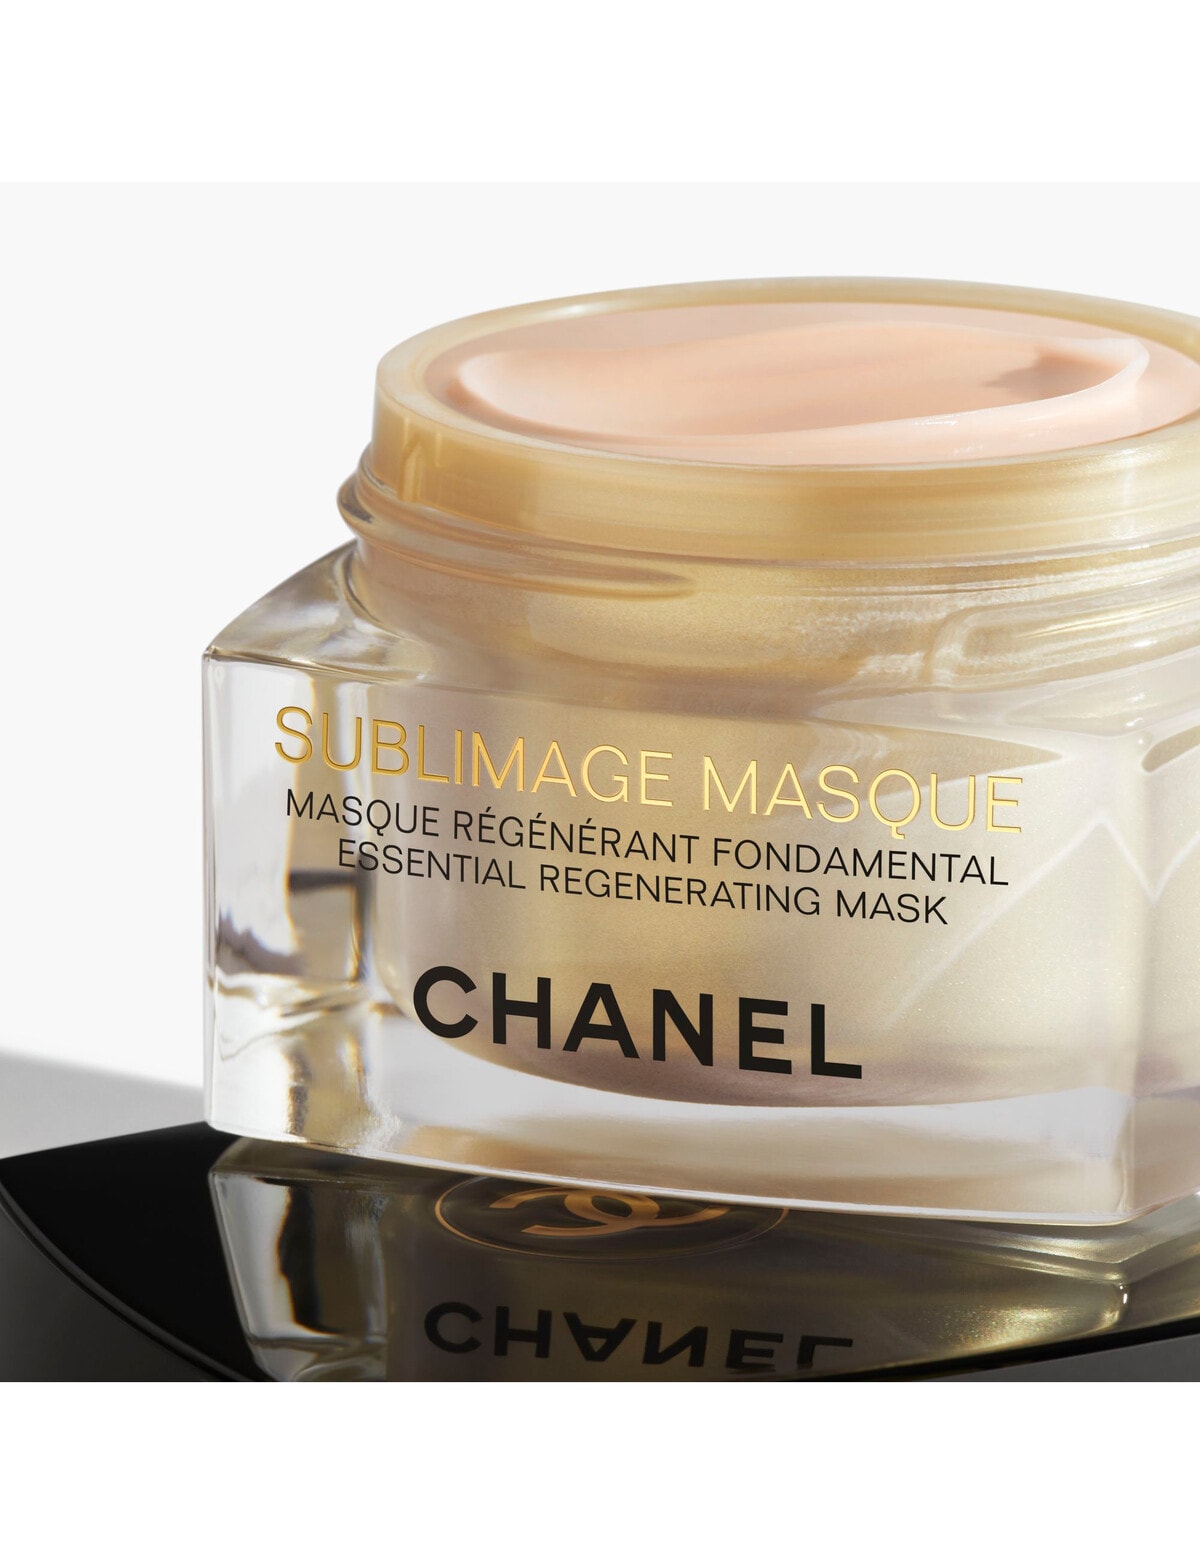 Review: Chanel Sublimage Le Baume - My Women Stuff